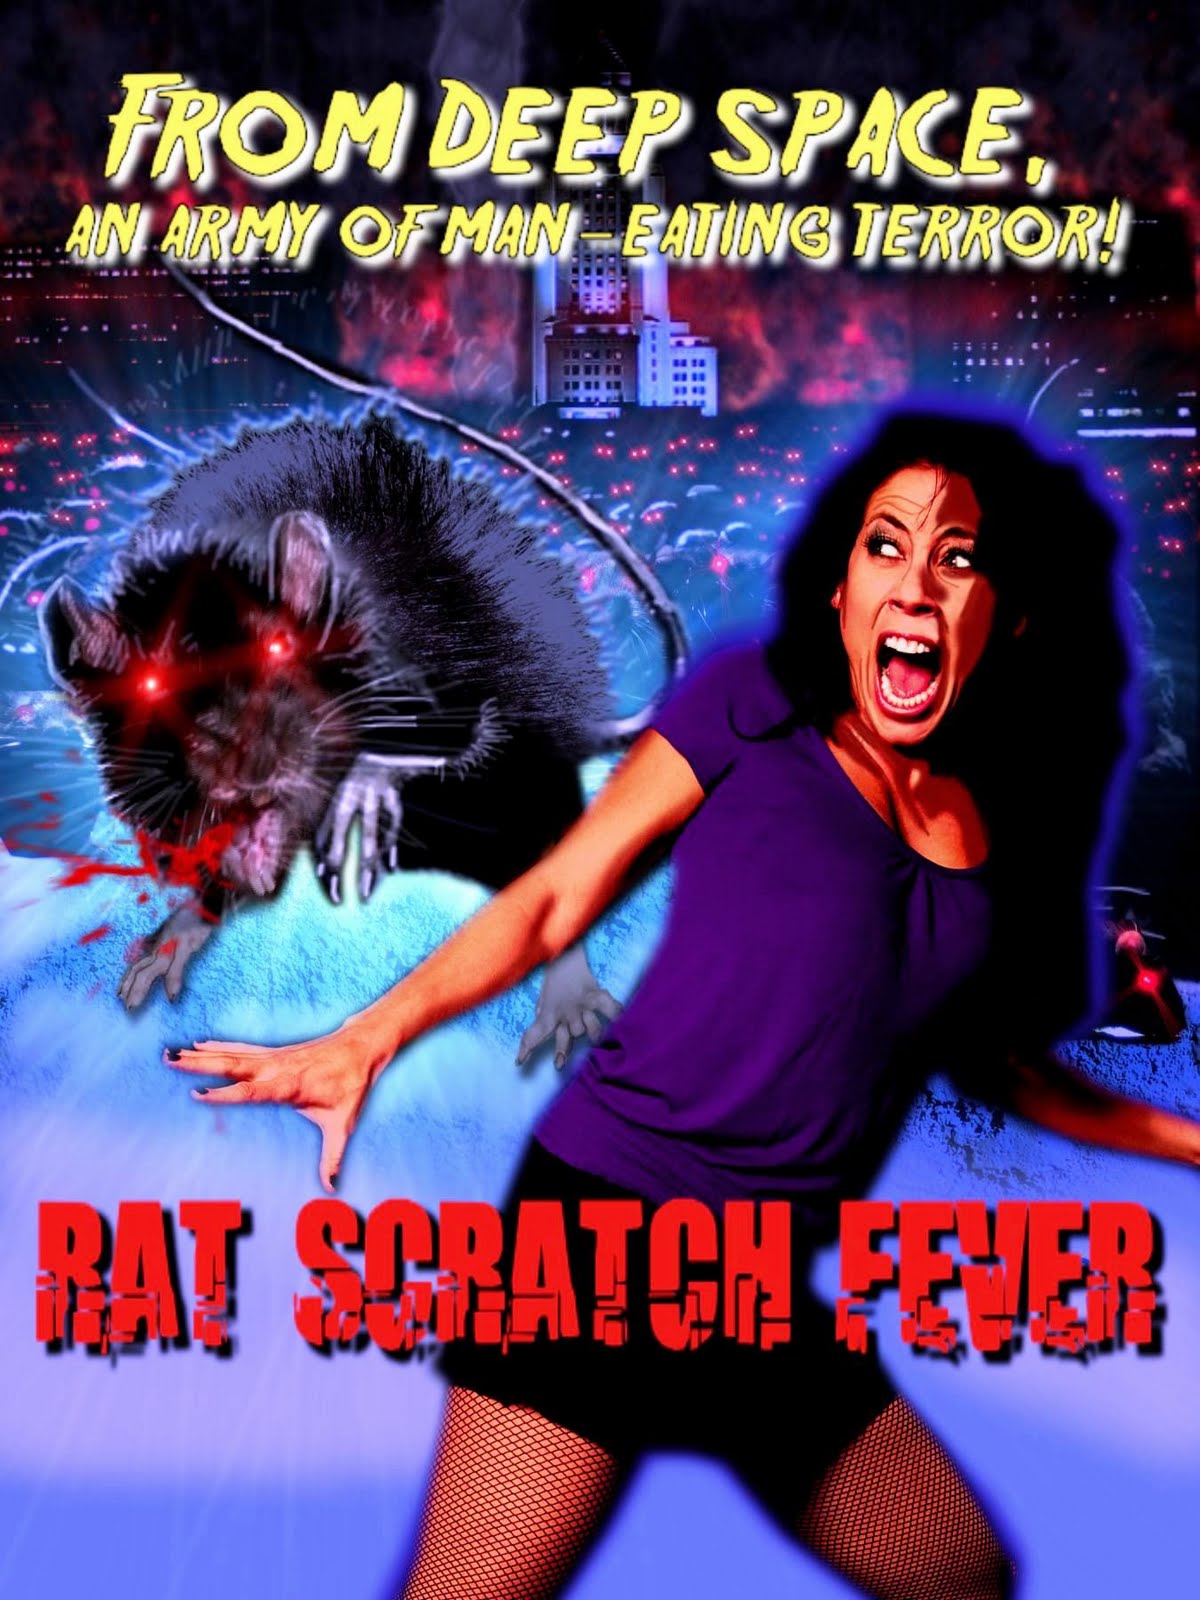 rat scratch fever